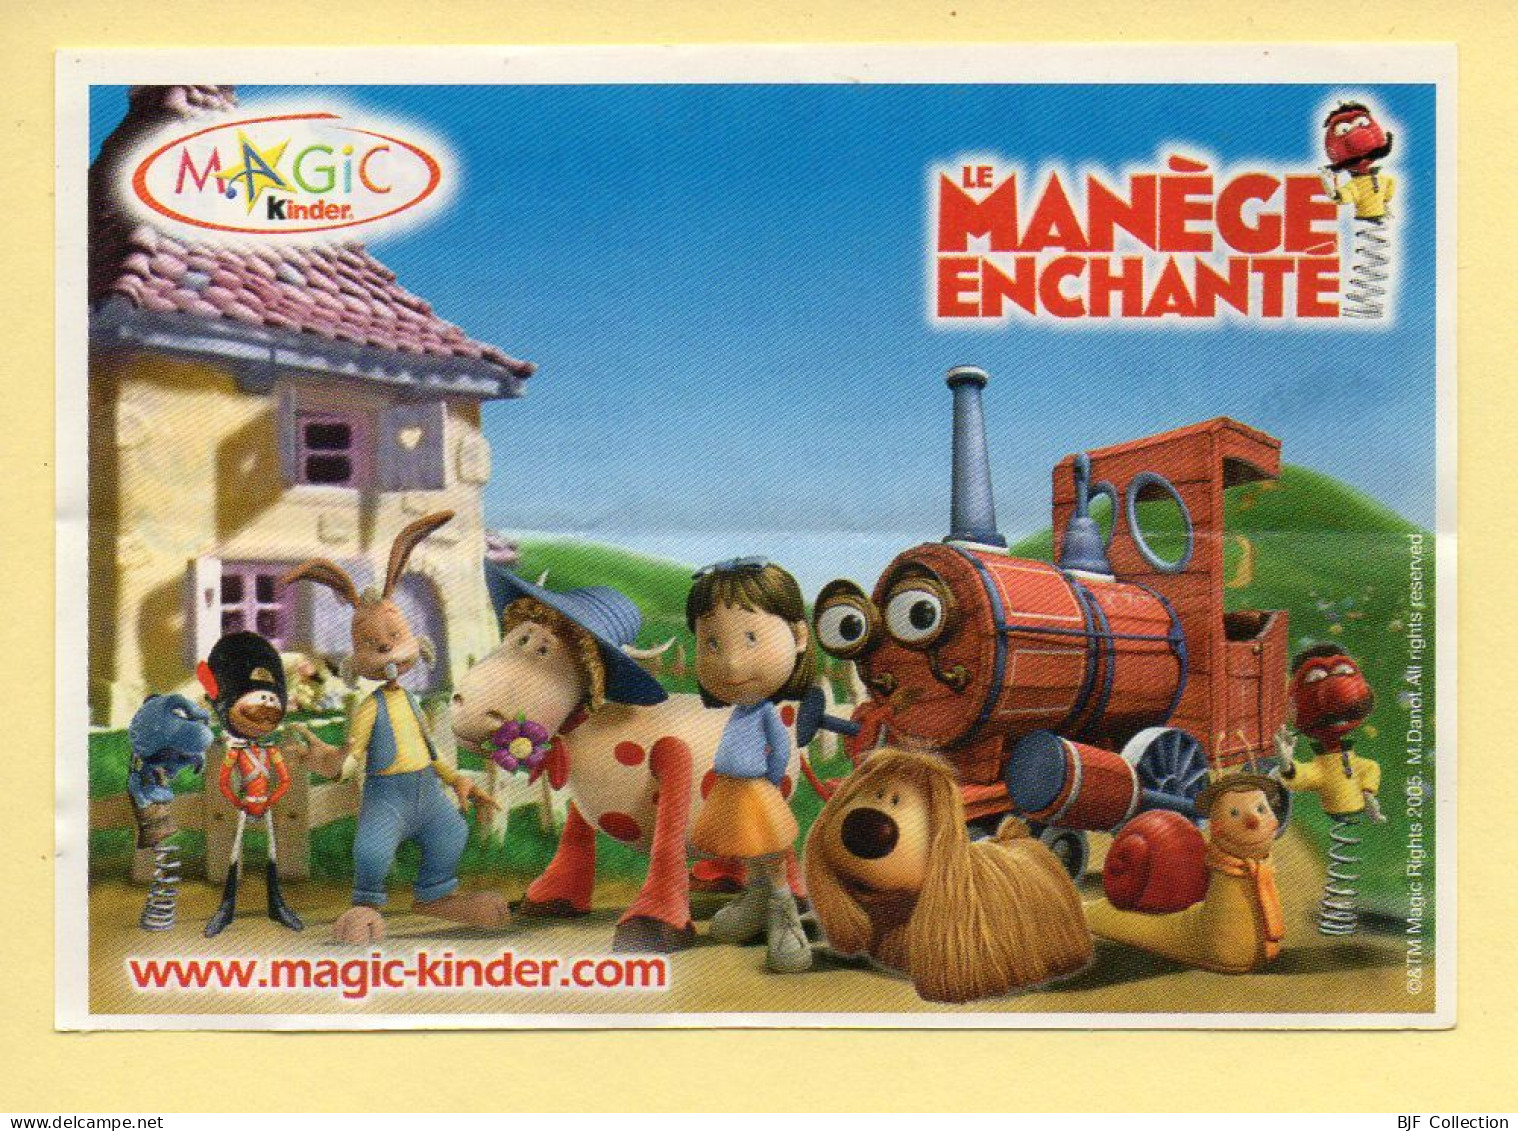 Kinder : BPZ N° S - 304 : Margote / Série Le Manège Enchanté - Handleidingen